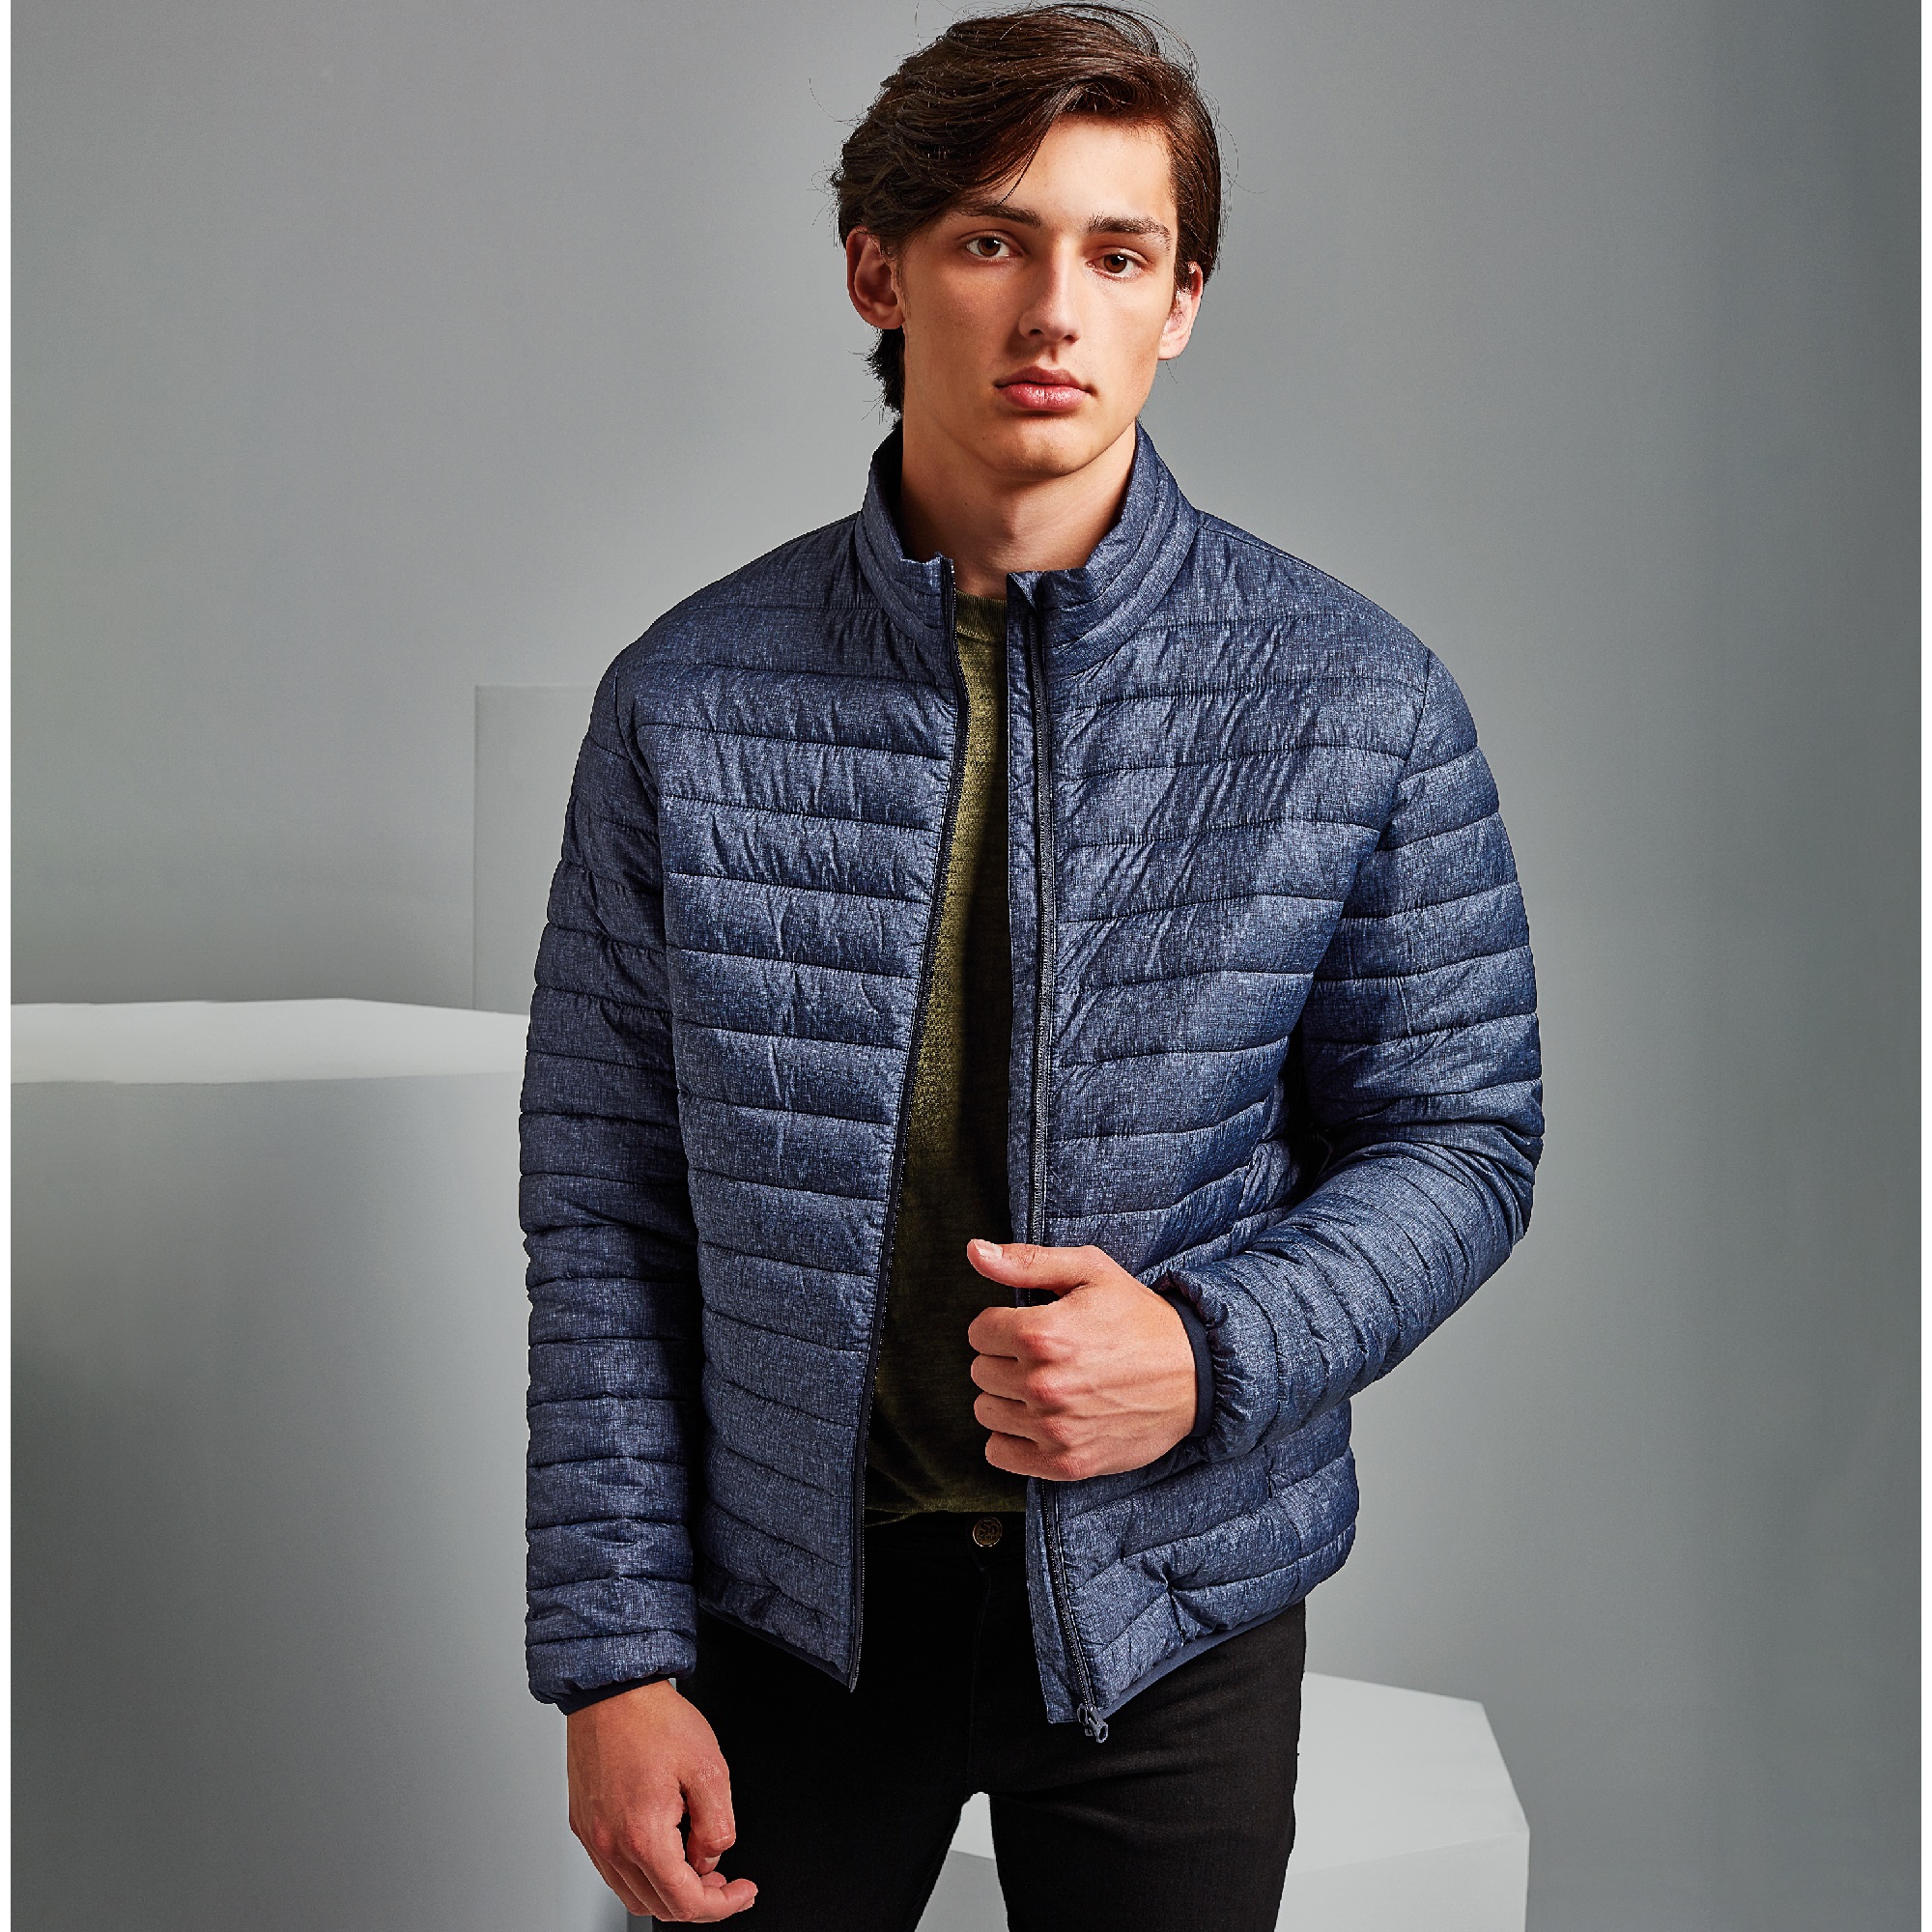 TS037 Melange padded jacket – GDB Manufacturing